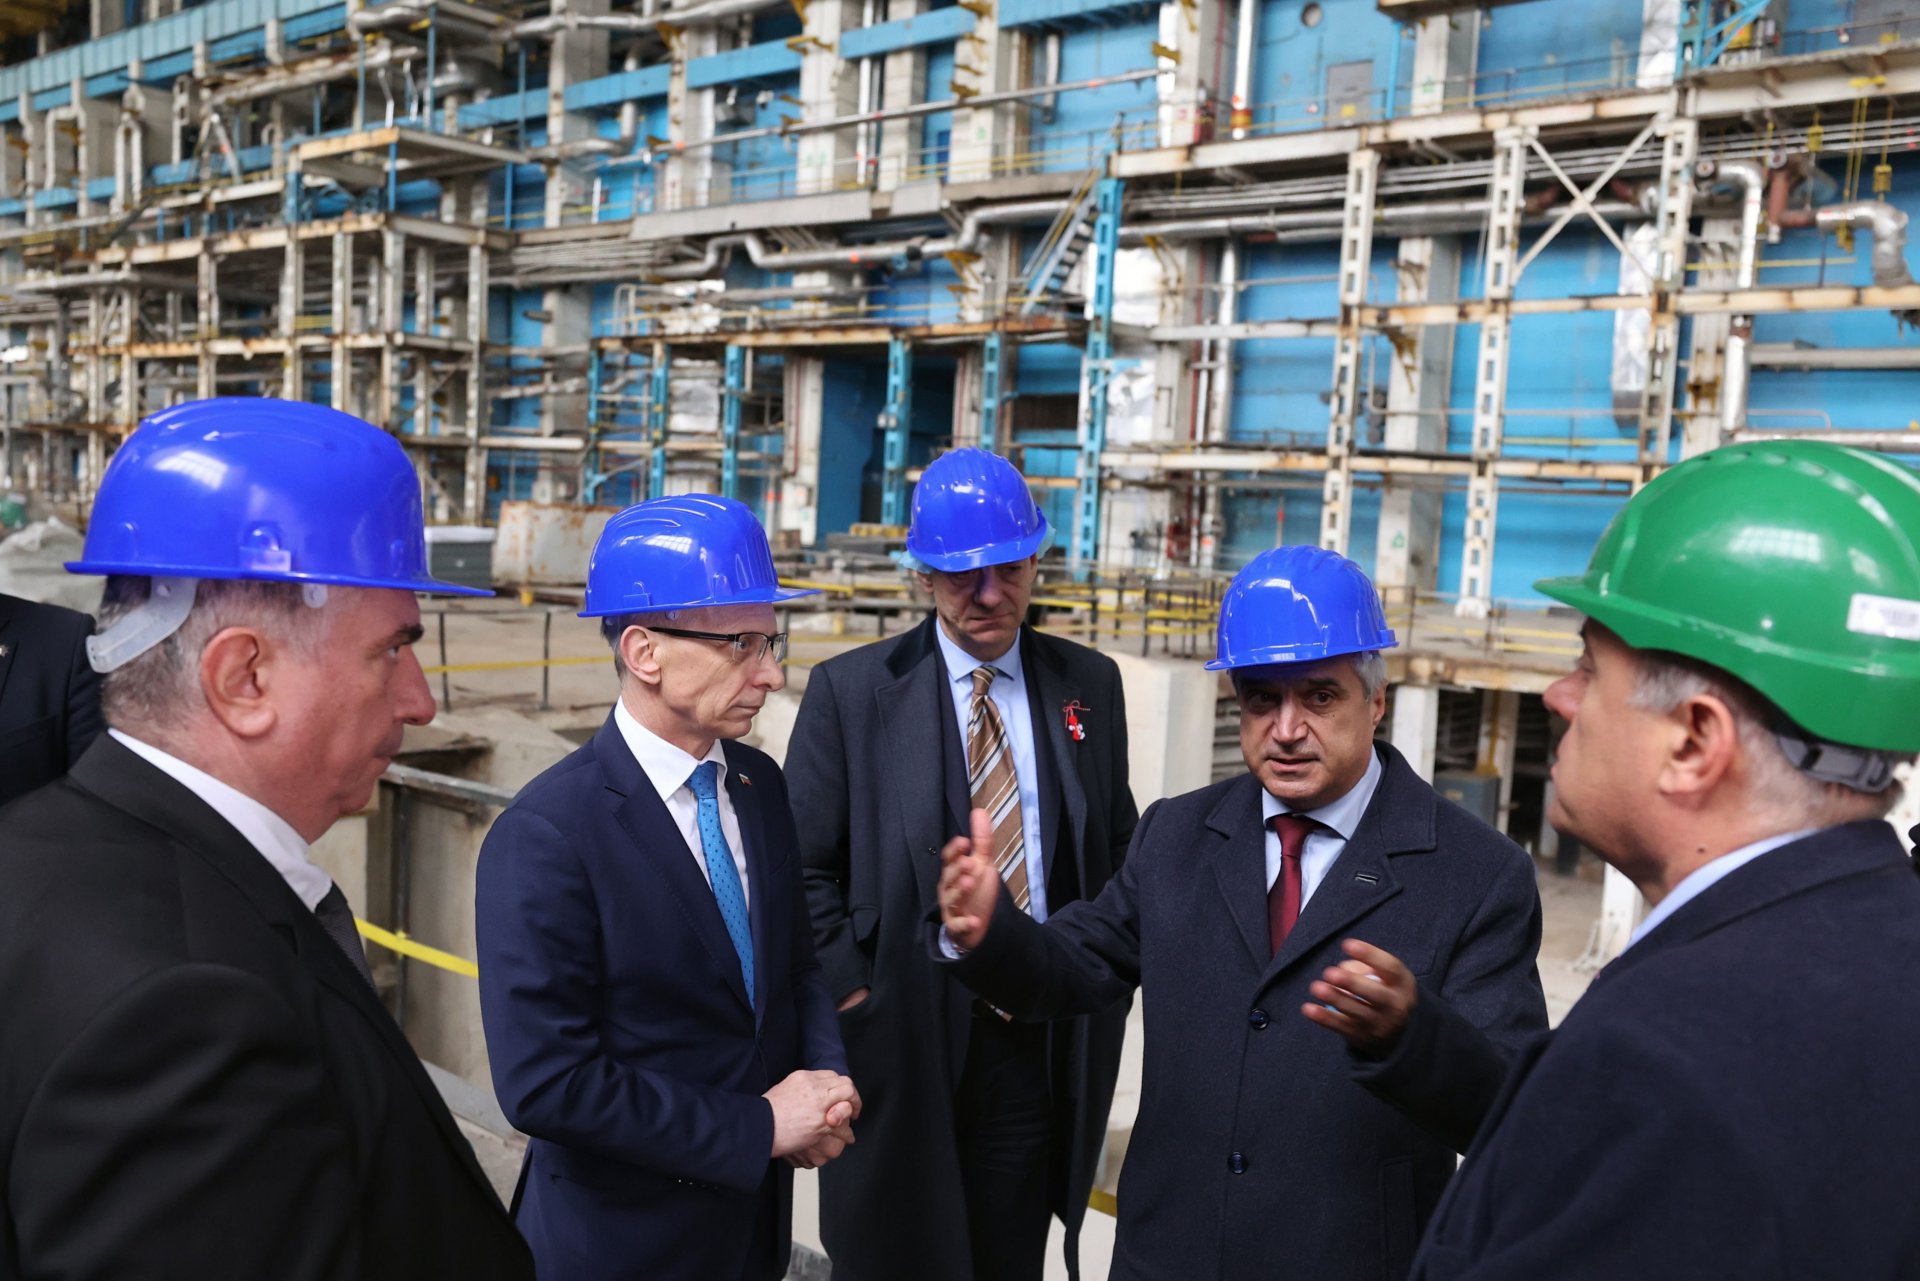  Премиерът Денков и министър Радев посетиха машинната зала на блокове от първи до четвърти, където работници на ДП „РАО“ провеждат дейности по извеждане от експлоатация